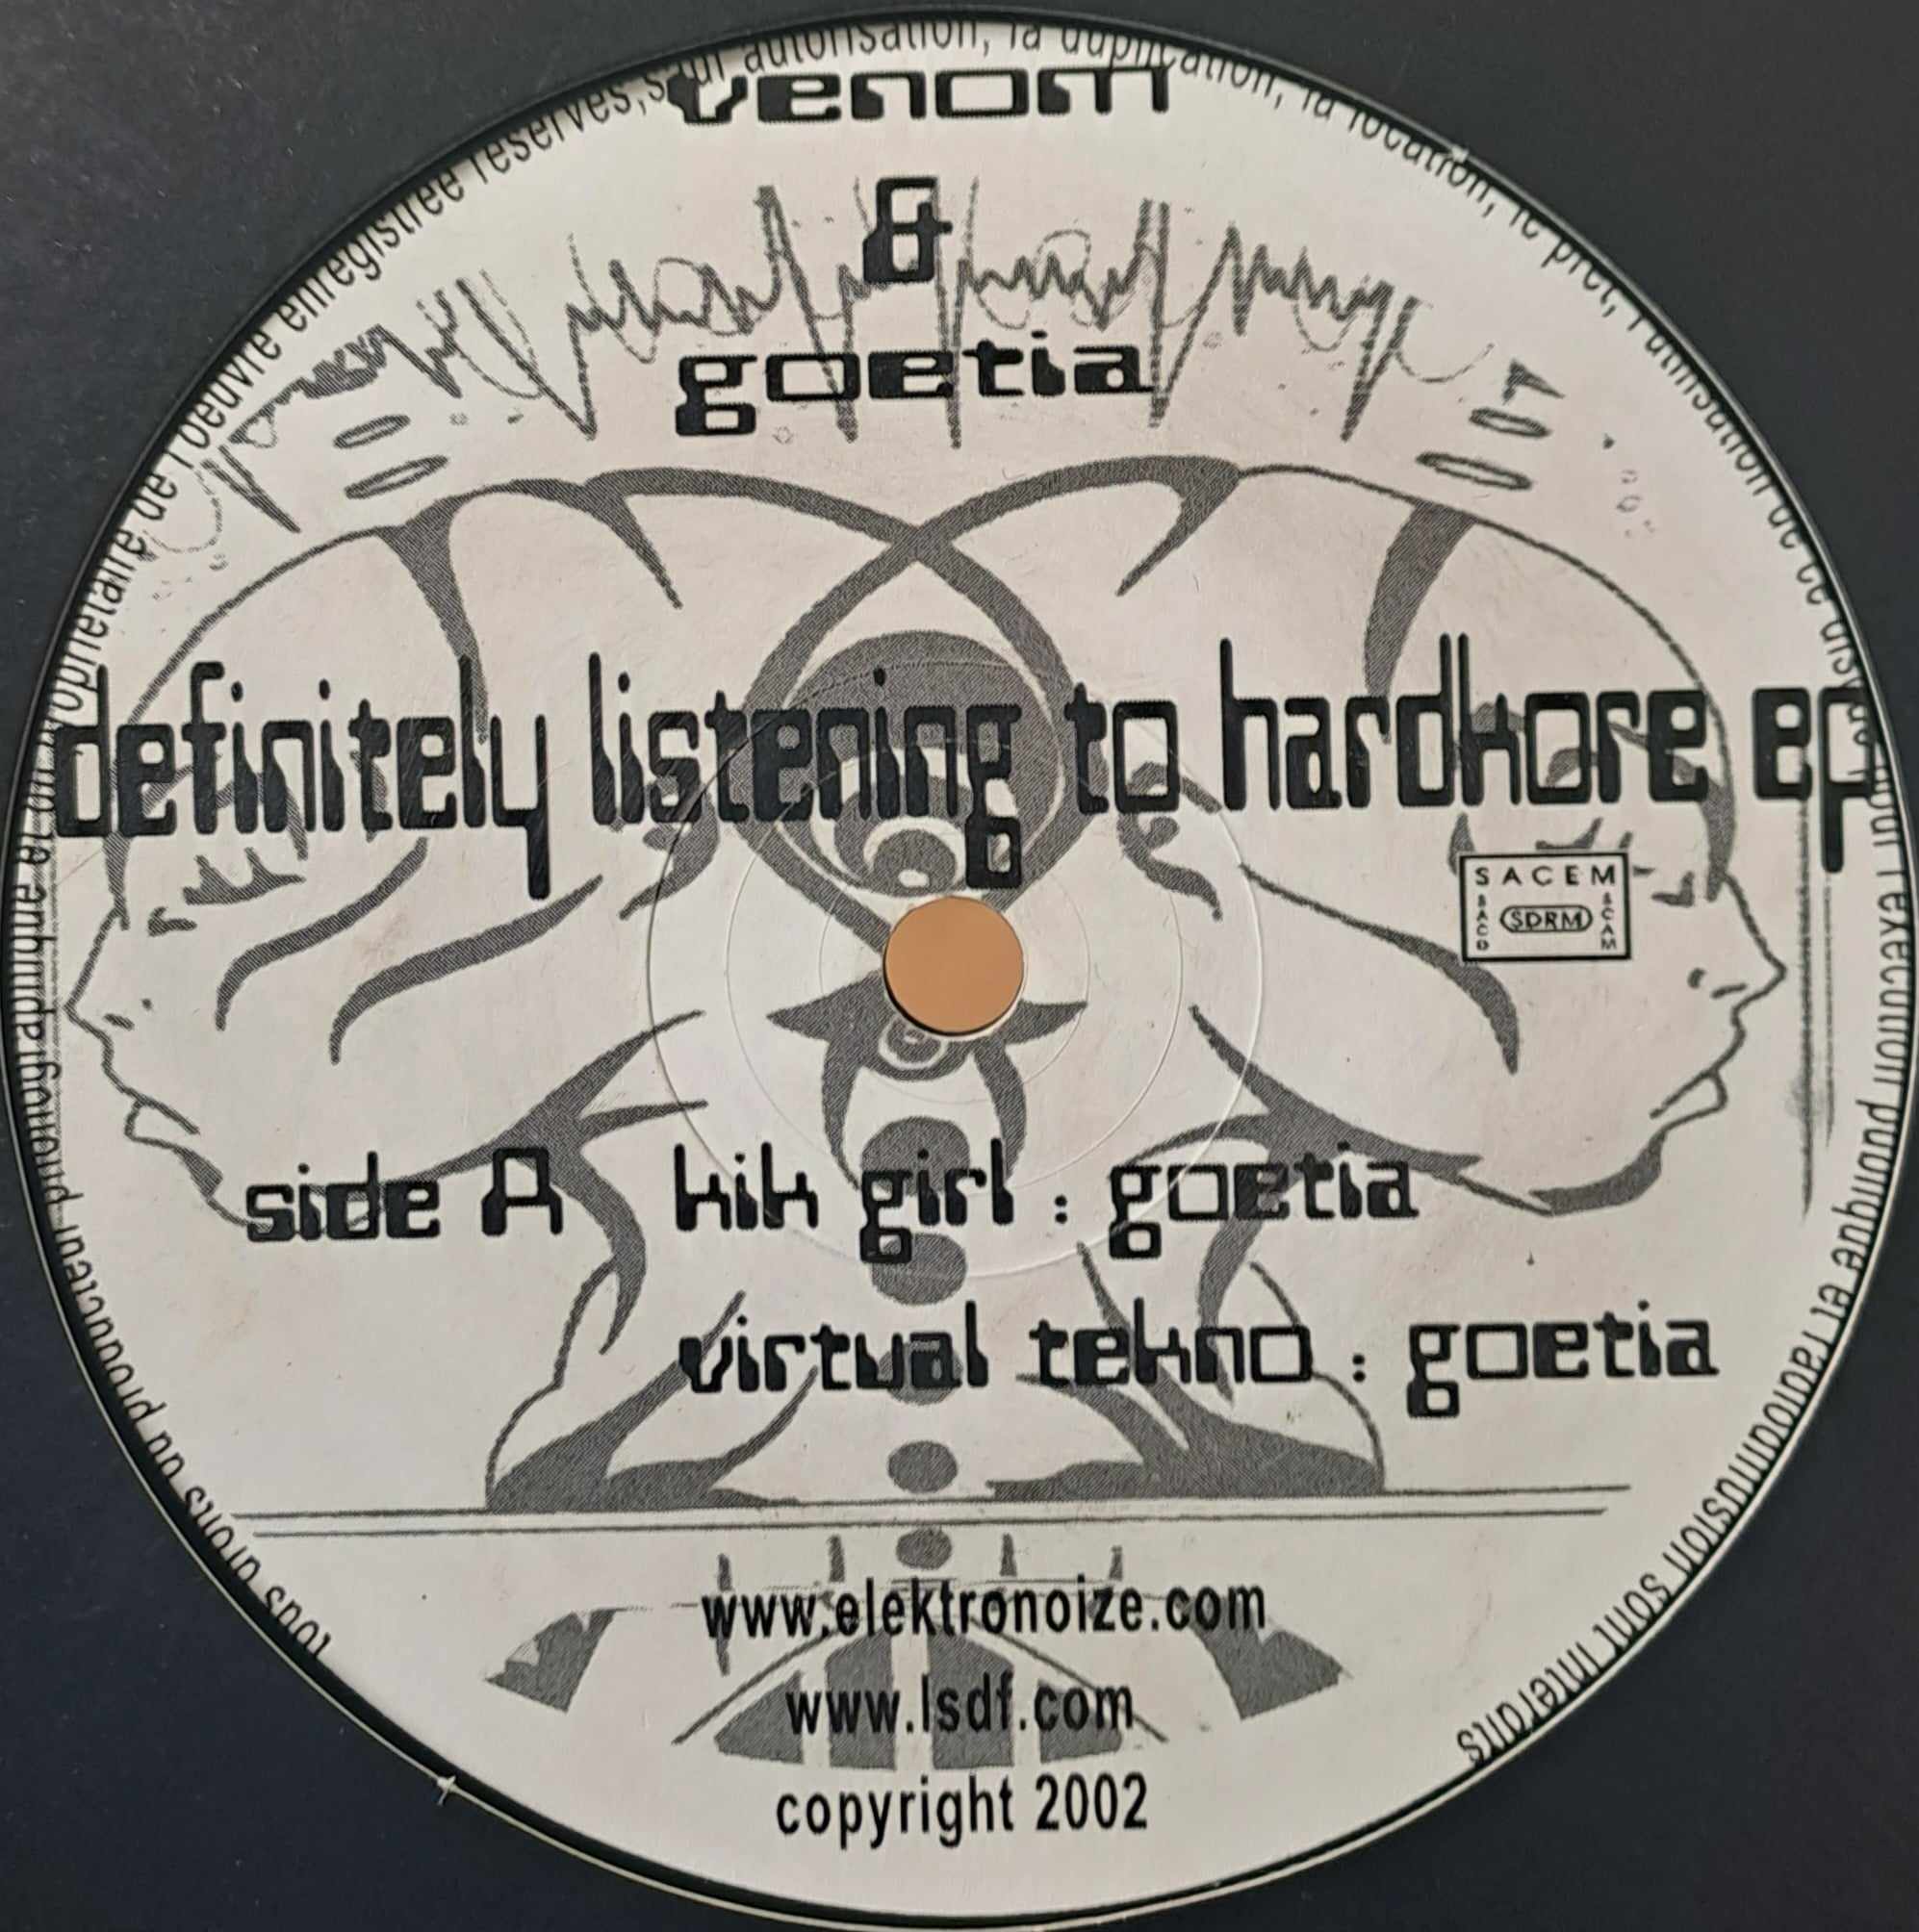 RoffKore Records 01 - vinyle hardcore